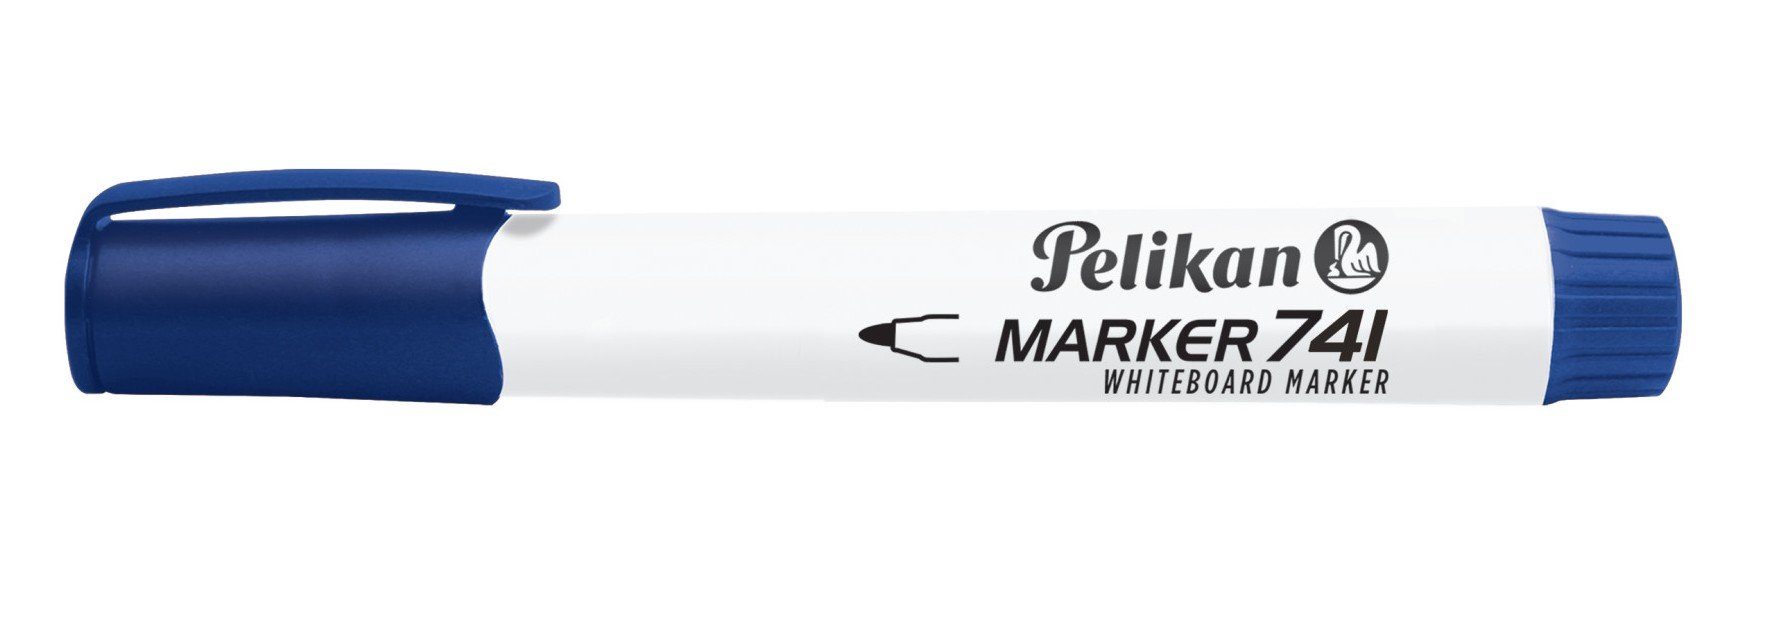 Pelikan Pelikan Whiteboard Marker blau 741 Marker